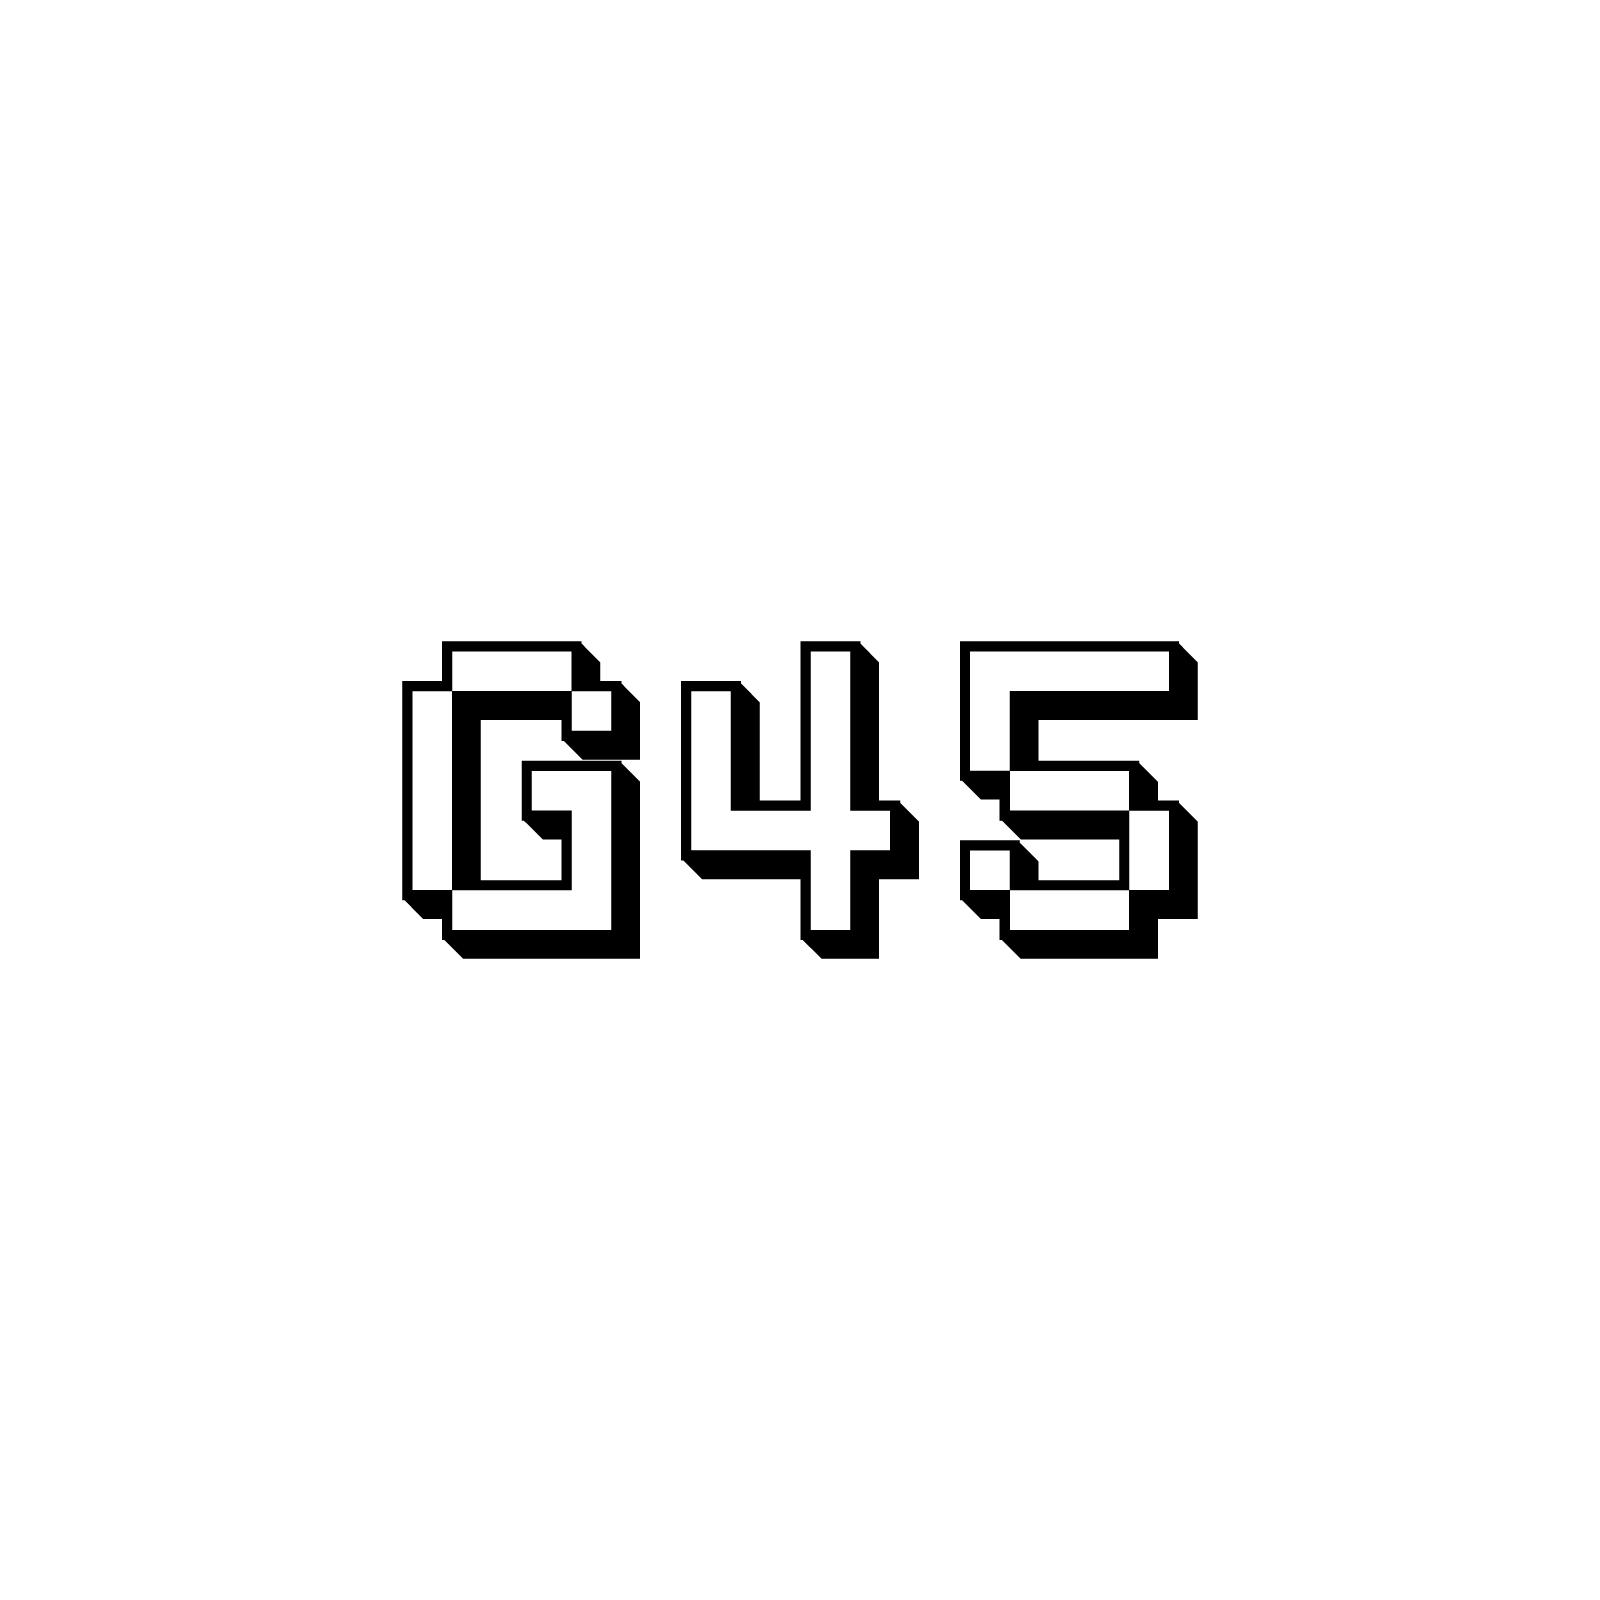 G45